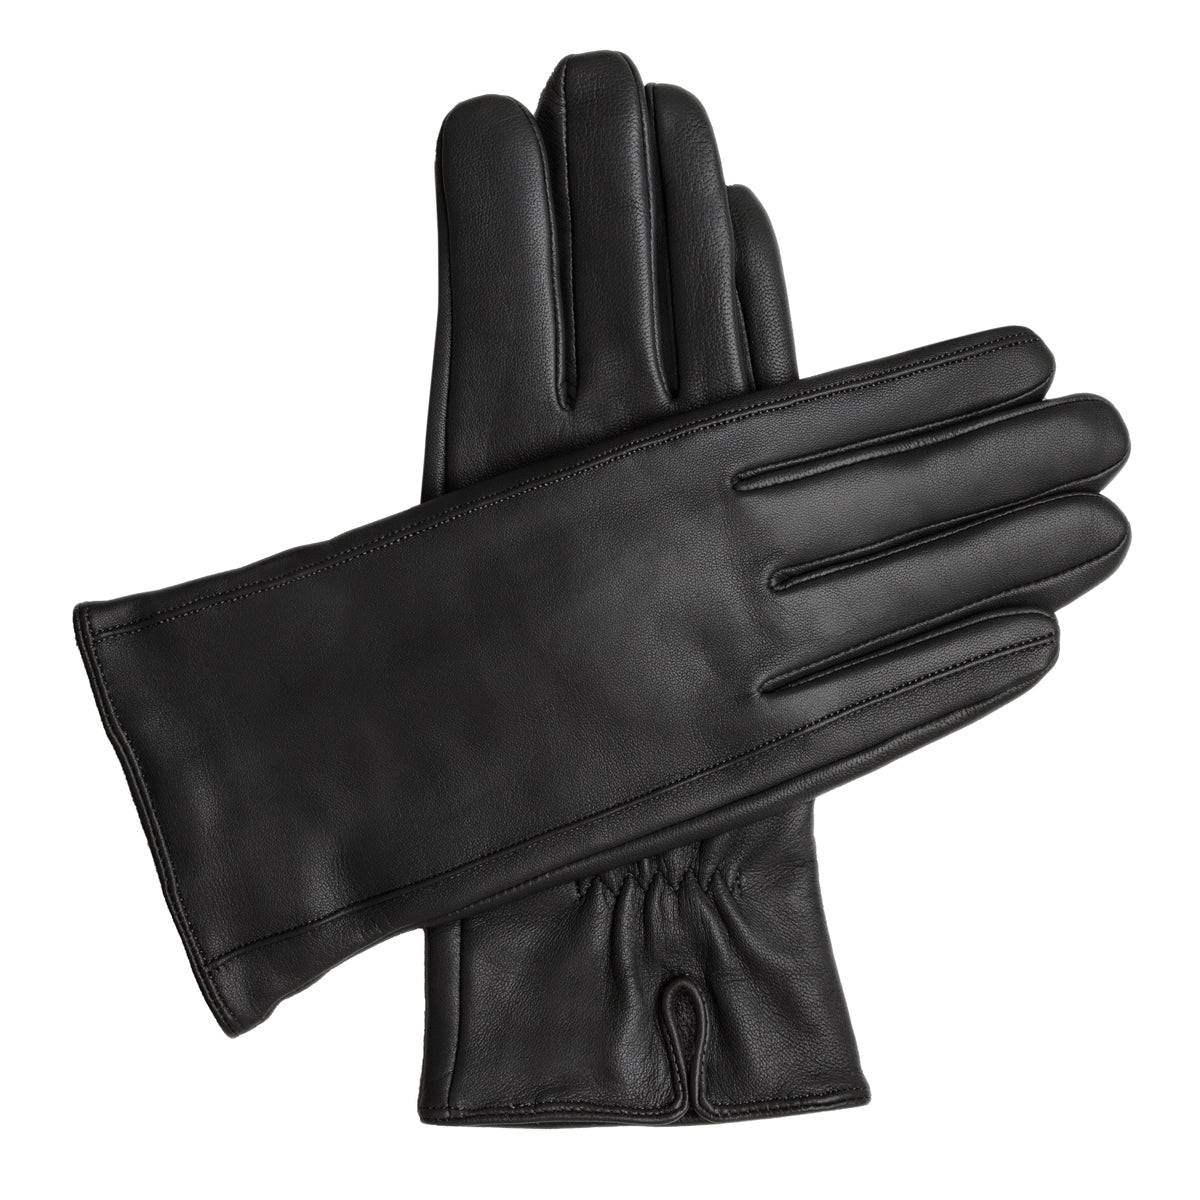 Women's Vegan Leather Gloves - Black, DH-VLW-BLKS, DH-VLW-BLKM, DH-VLW-BLKL, DH-VLW-BLKXL